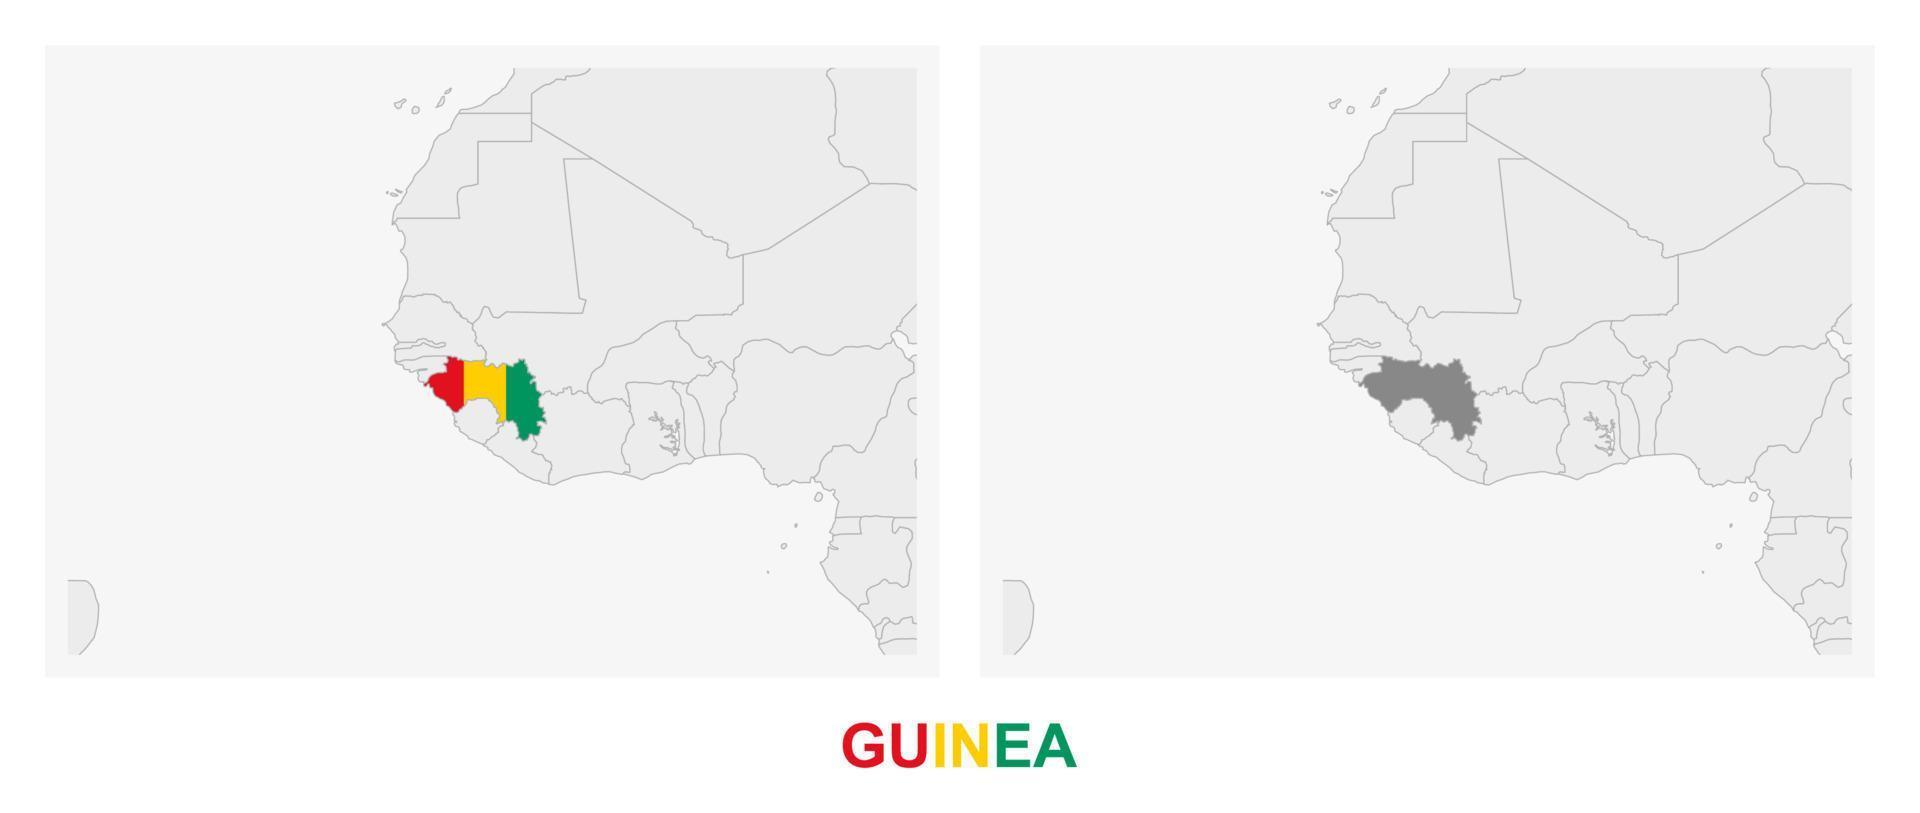 zwei versionen der karte von guinea, mit der flagge von guinea und dunkelgrau hervorgehoben. vektor